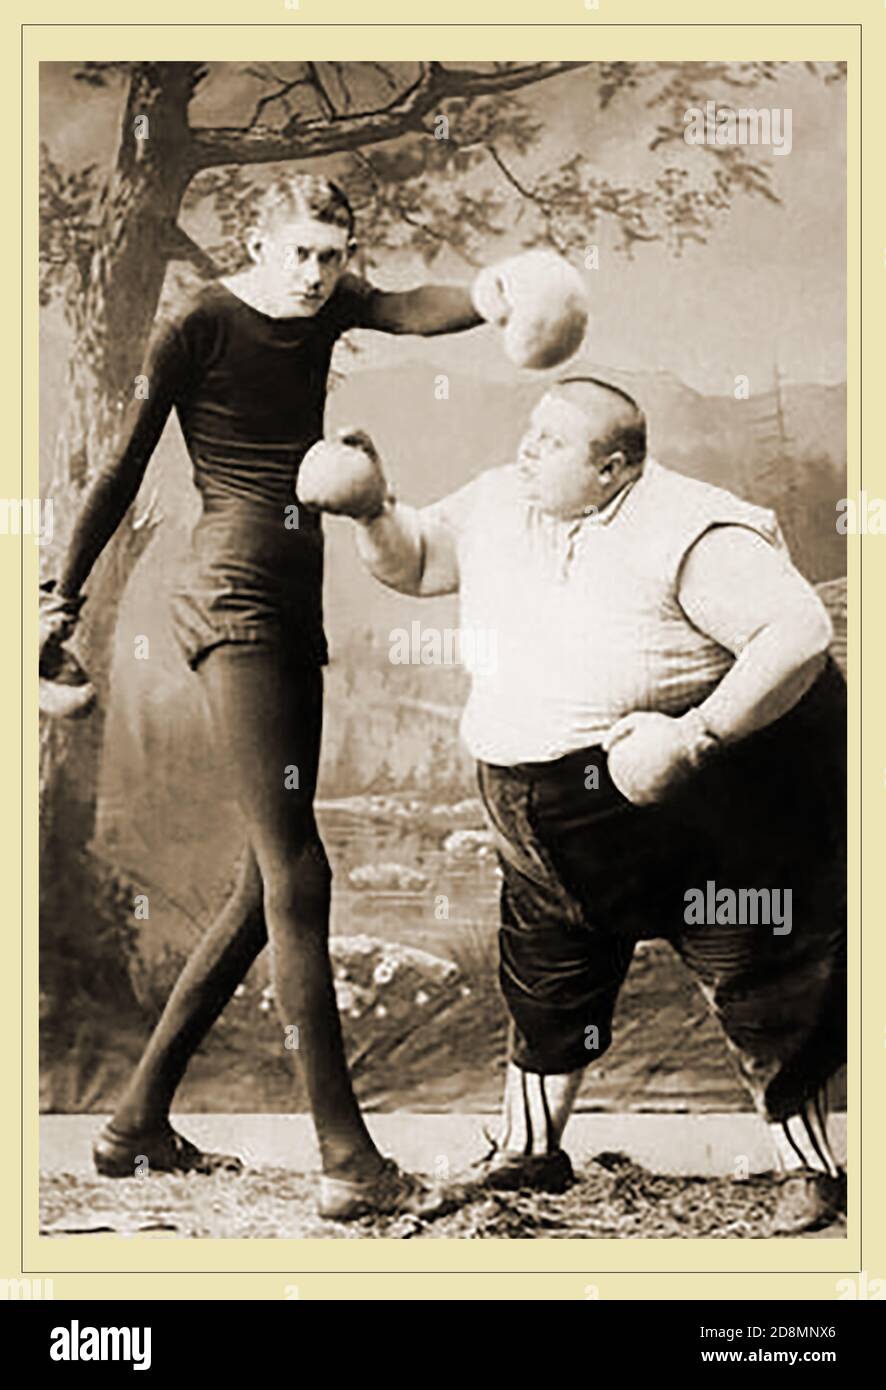 Eine amerikanische 'Freak Show'-Posteraufnahme aus dem späten 19. Jahrhundert, die für einen Boxkampf zwischen dem so kalierten 'größten (oder dünnsten) Mann der Welt' und dem 'fettesten' Mann der Welt wirbt. Stockfoto